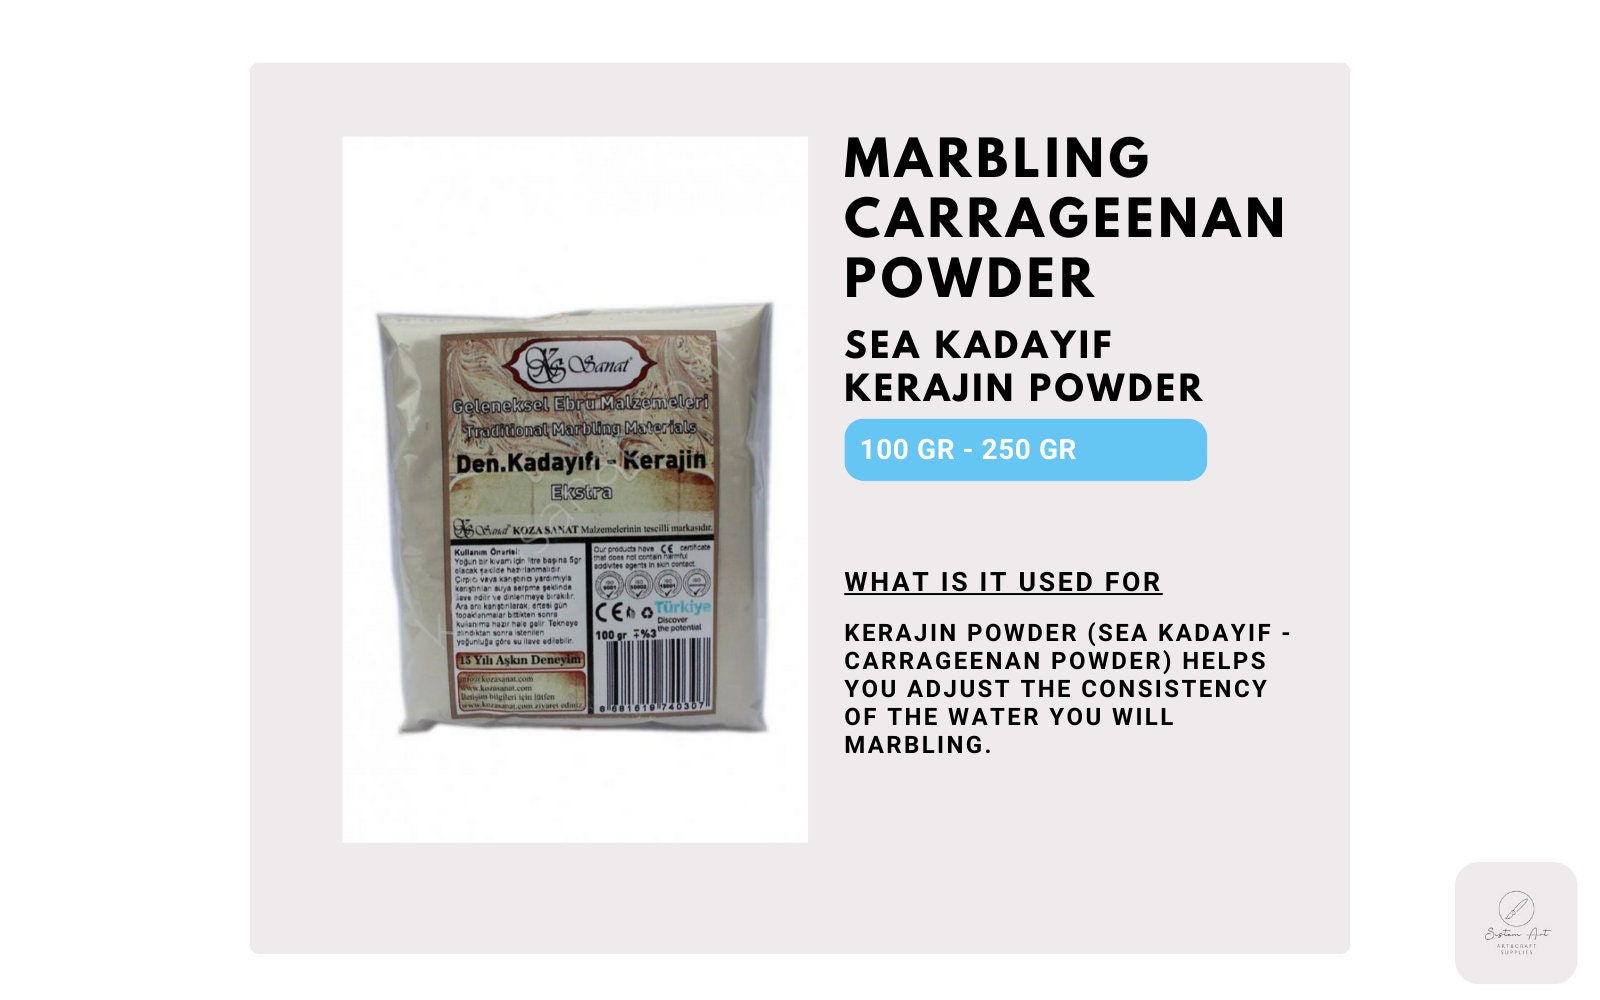 Half Pound Lambda Carrageenan Powder Supplies for Marbling on